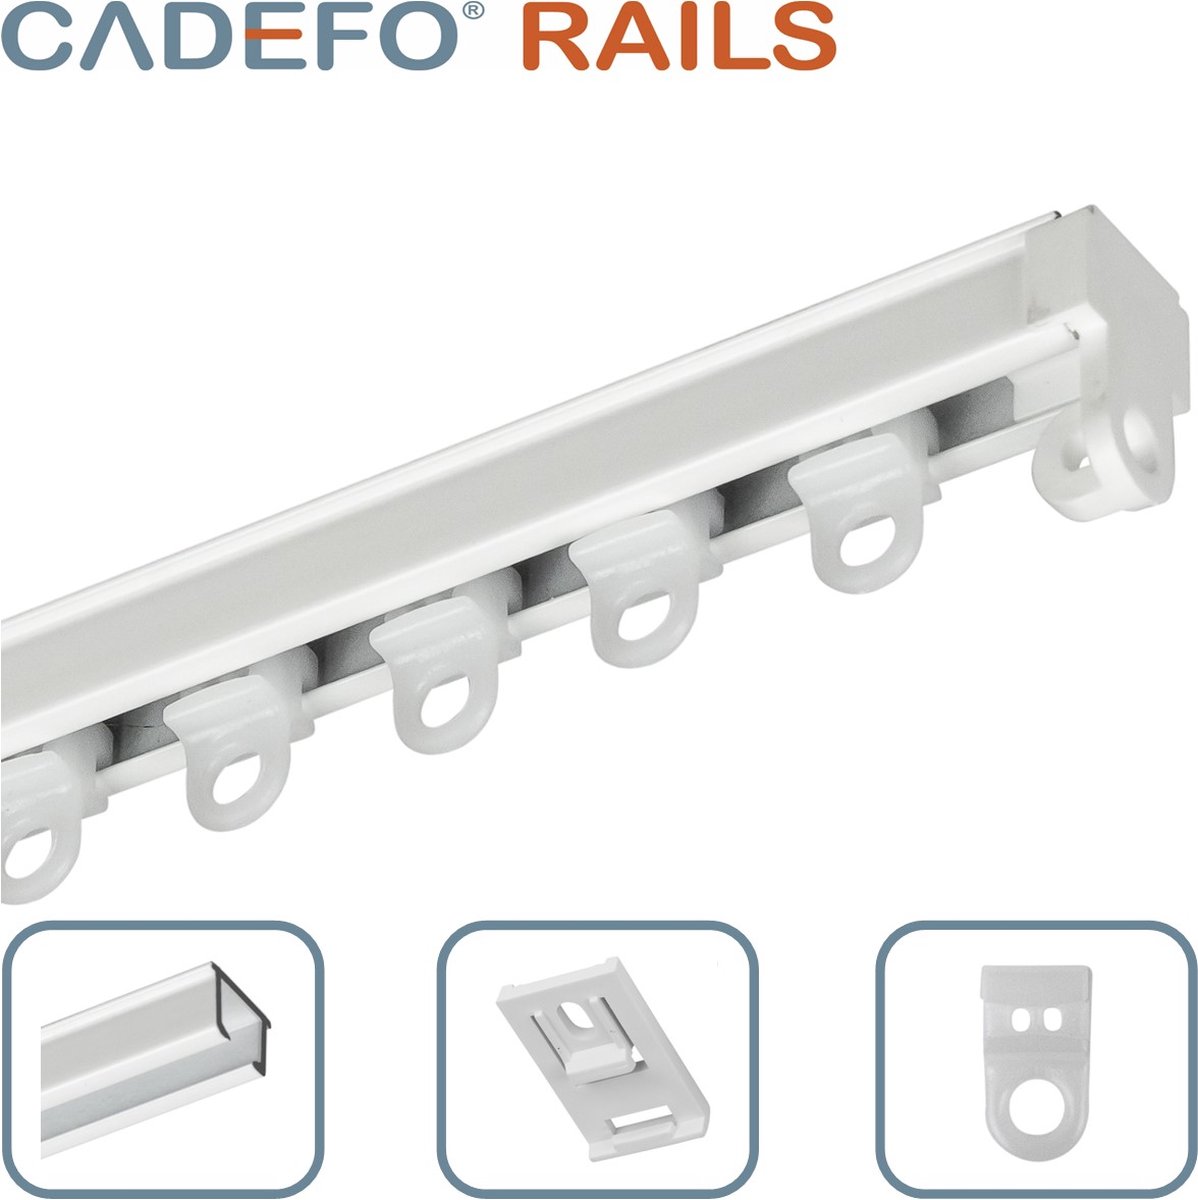 CADEFO RAILS (401 - 450 cm) Gordijnrails - Compleet op maat! - UIT 1 STUK - Leverbaar tot 6 meter - Plafondbevestiging - Lengte 412 cm